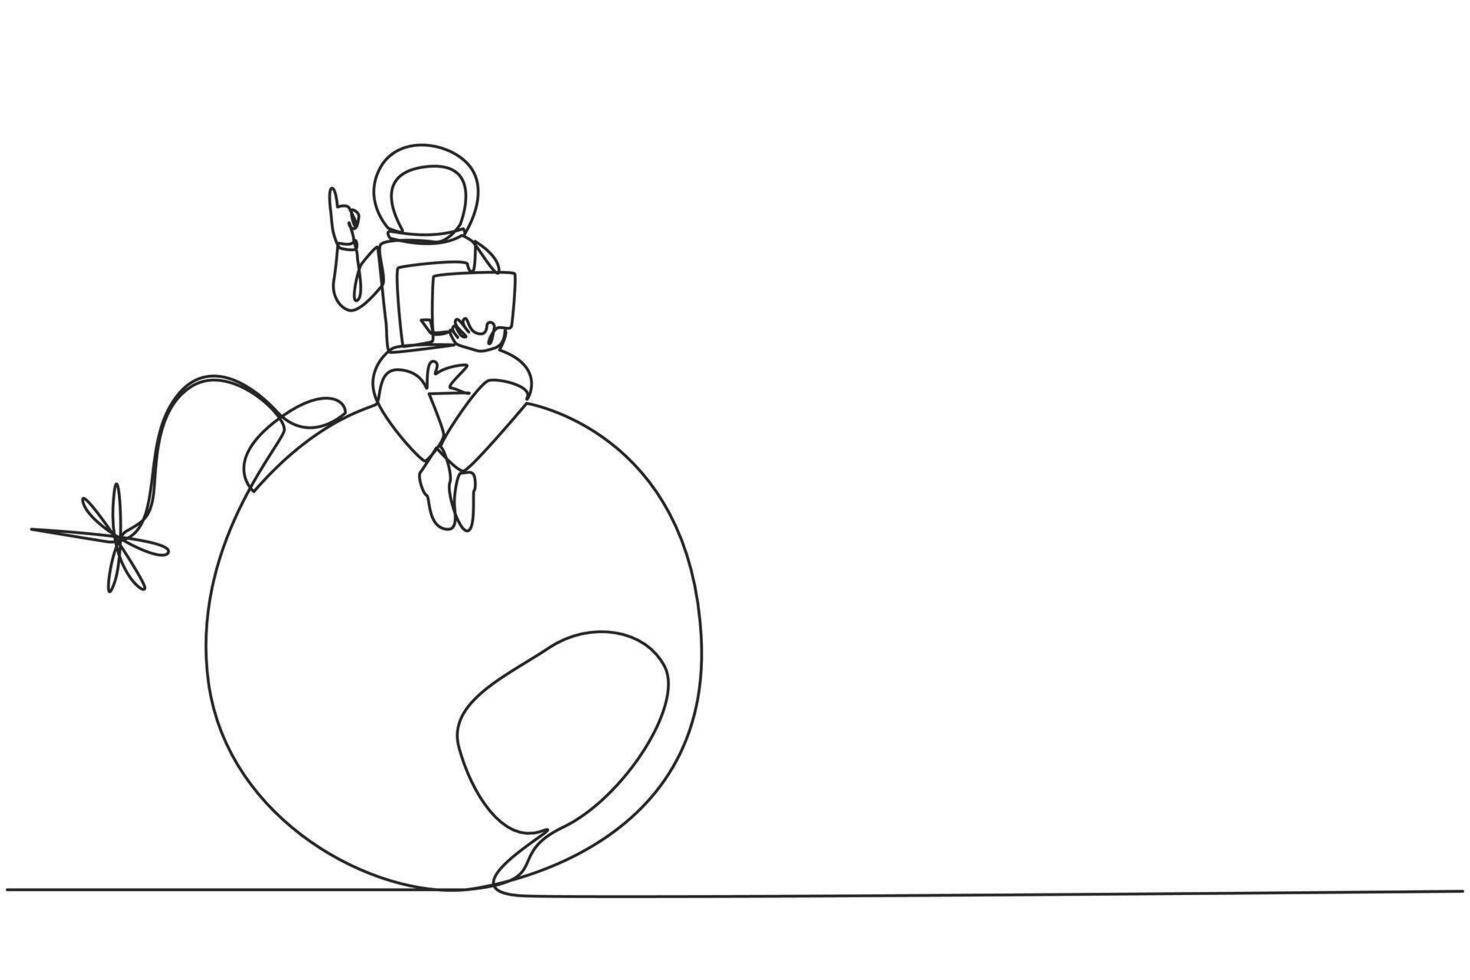 Single kontinuierlich Linie Zeichnung jung Astronaut Sitzung auf groß Bombe mit ein Verbrennung Sicherung halten Laptop erziehen einer Hand. leichtsinnig Expeditionen gefährden Forschung. einer Linie Design Vektor Illustration